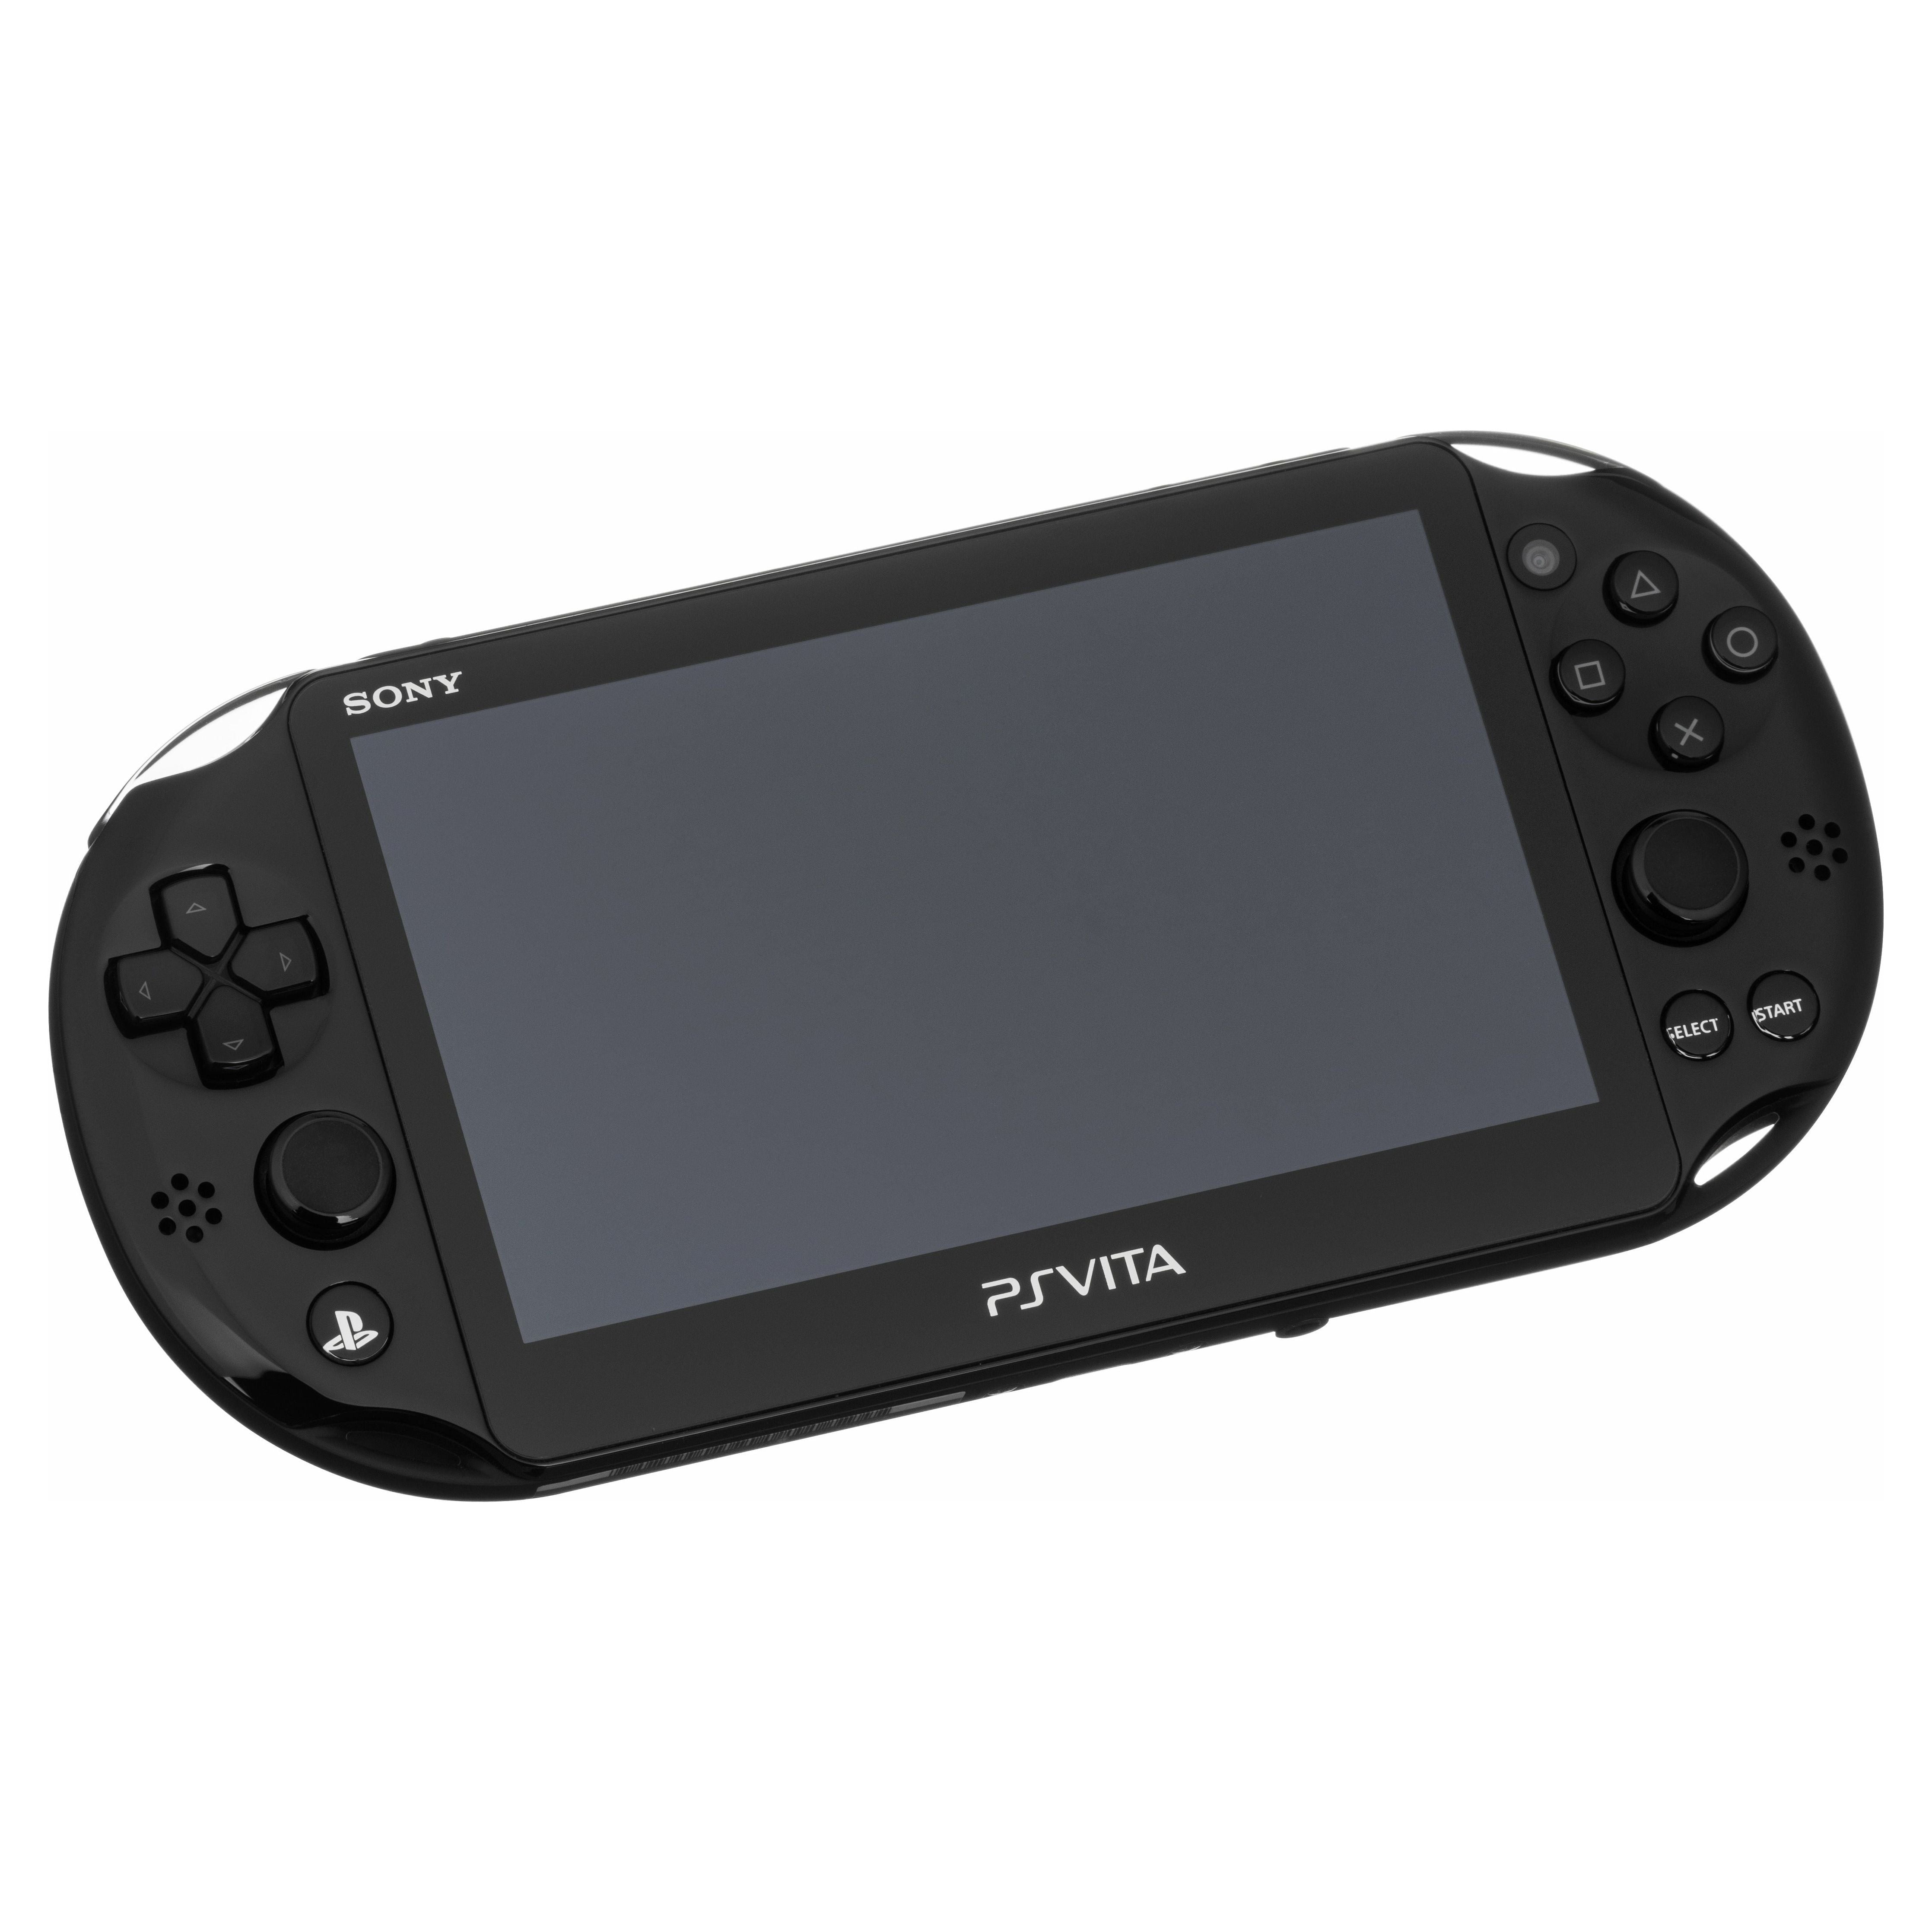 PS Vita System - Model 2001 (Black)